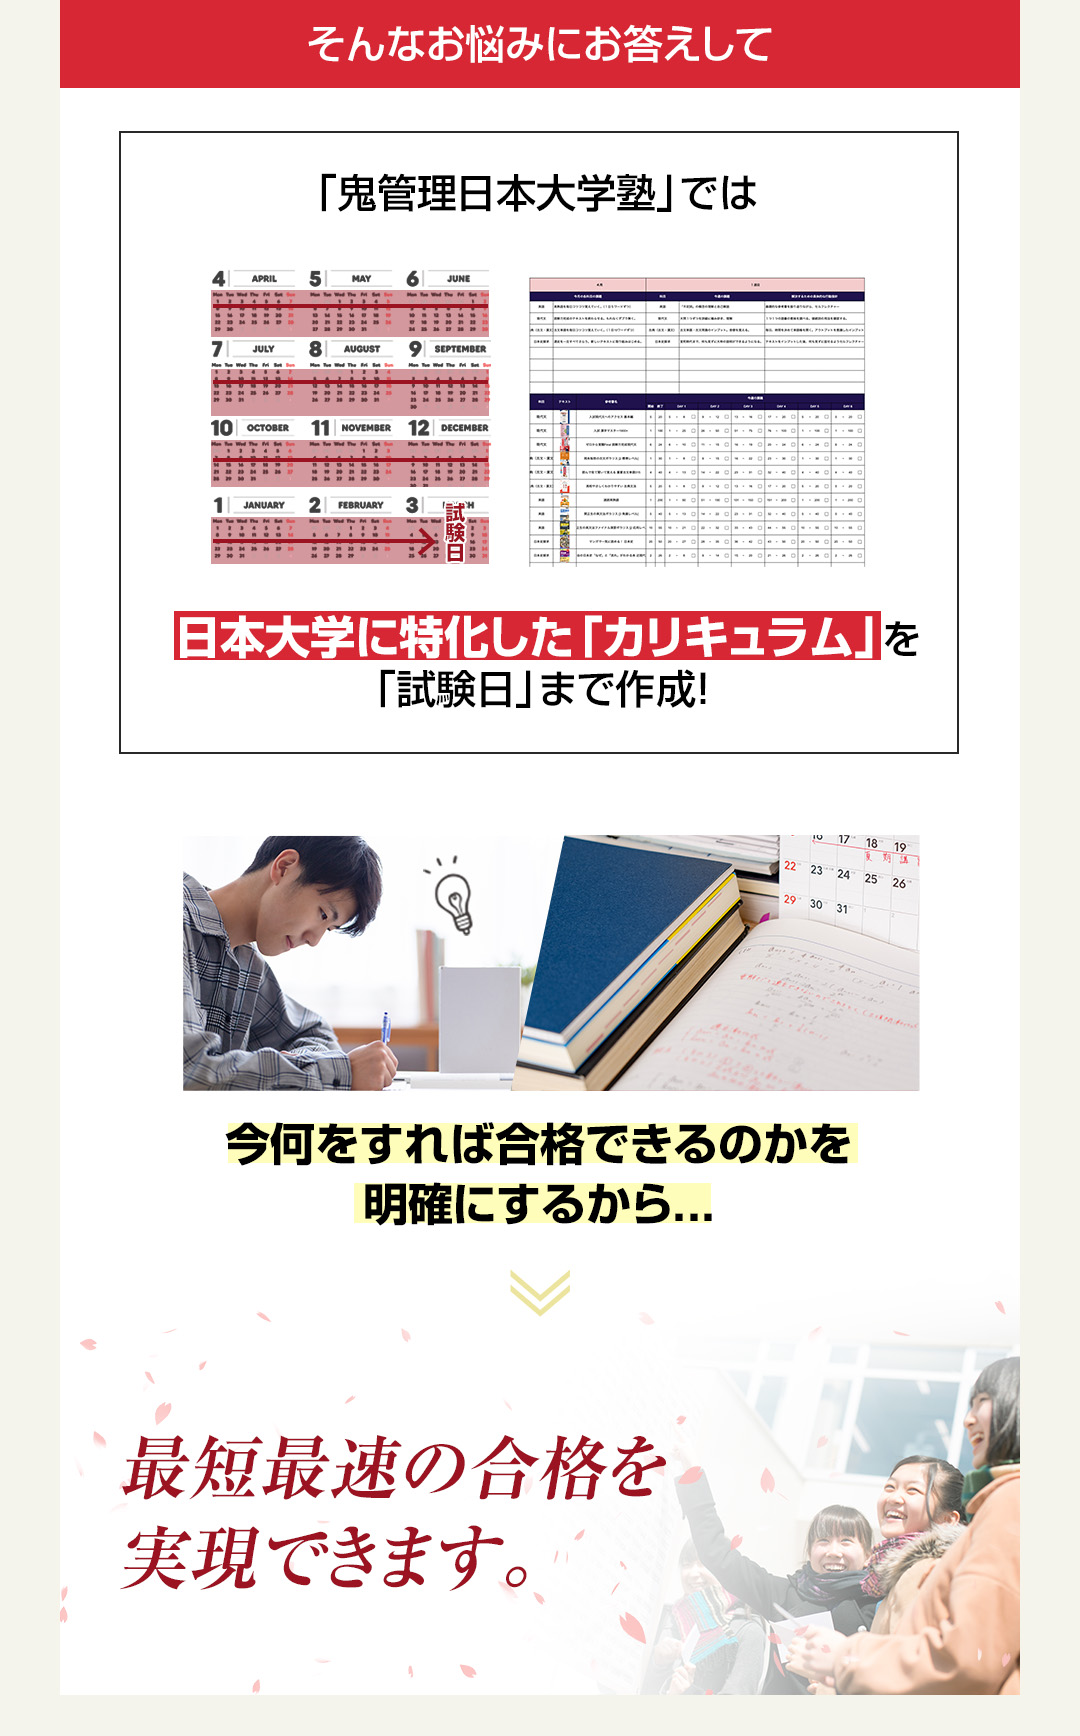 「鬼管理日本大学塾」では日本大学に特化した「カリキュラム」を「試験日」まで作成